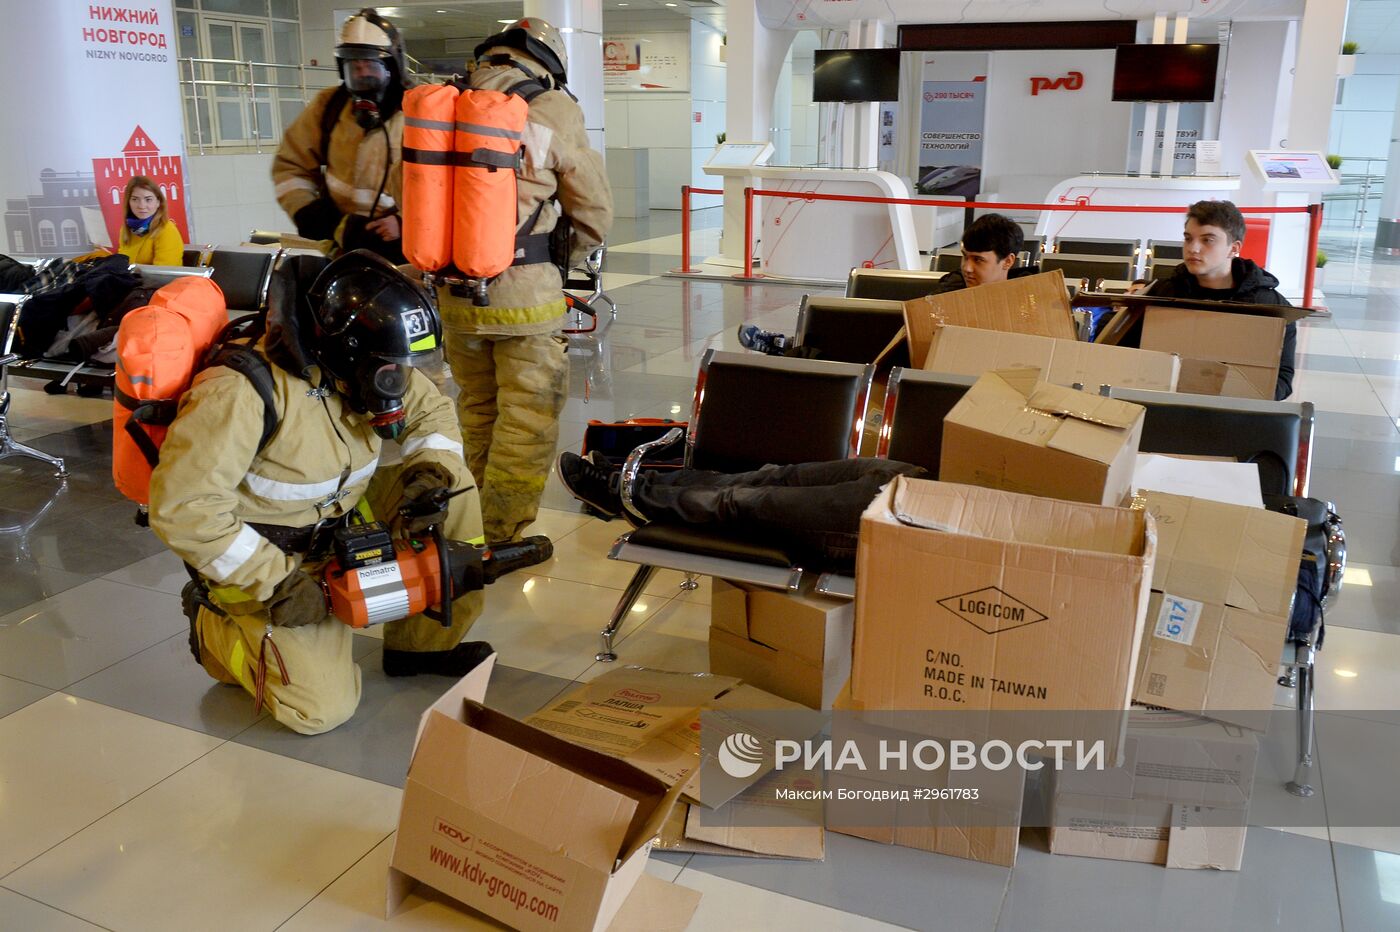 Учения по ликвидации последствий пожаров в Казани